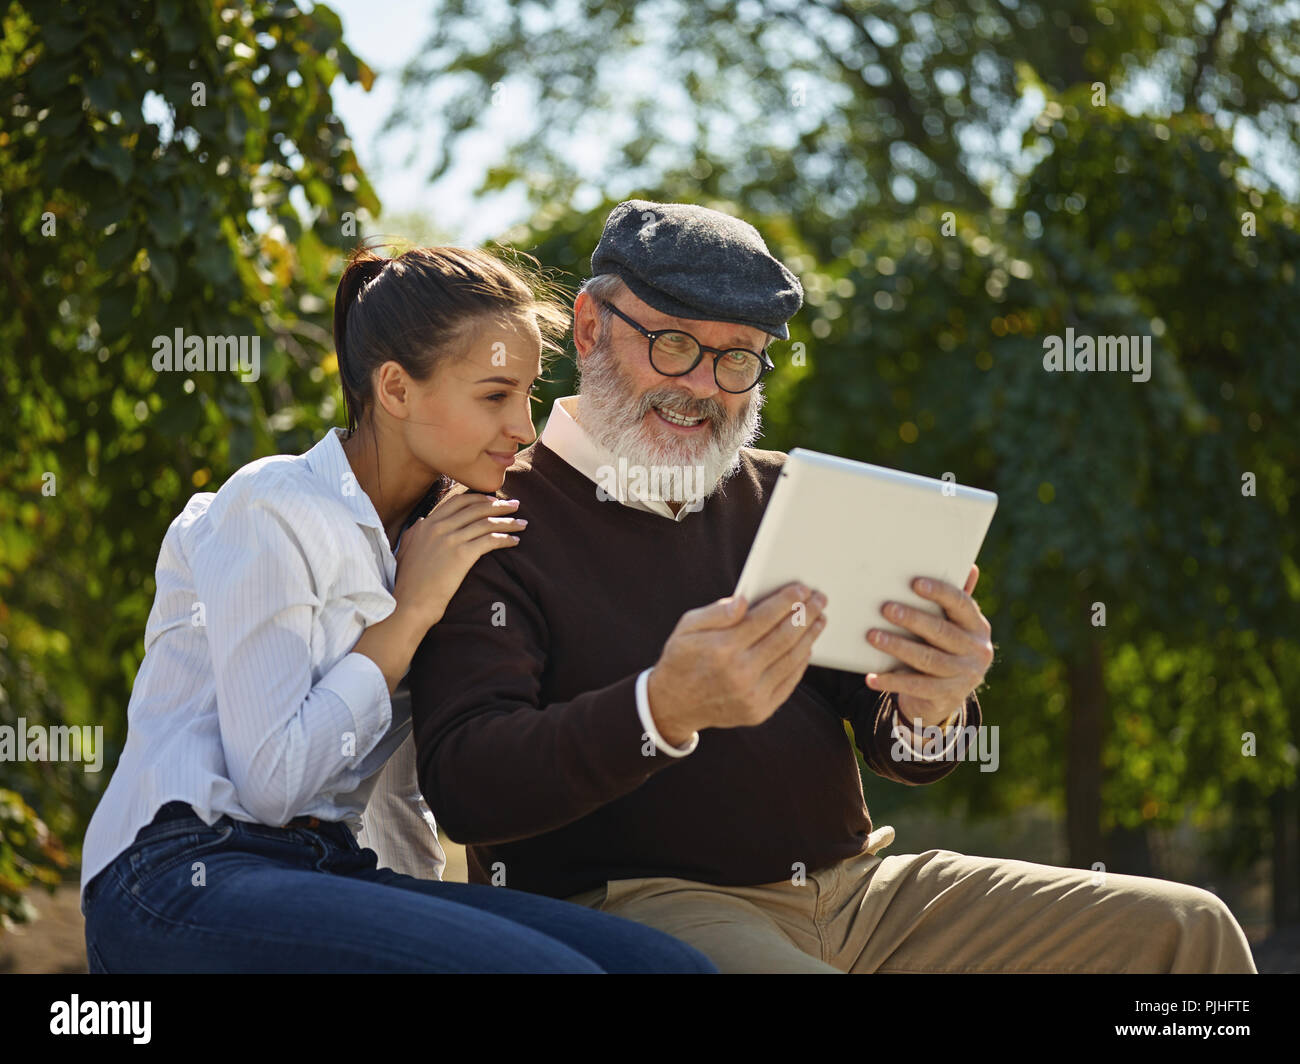 Aider quelqu'un que vous aimez. Portrait of young smiling girl sitting avec grand-père et l'ordinateur portable contre city park. communauté et de vie de la famille concept Banque D'Images